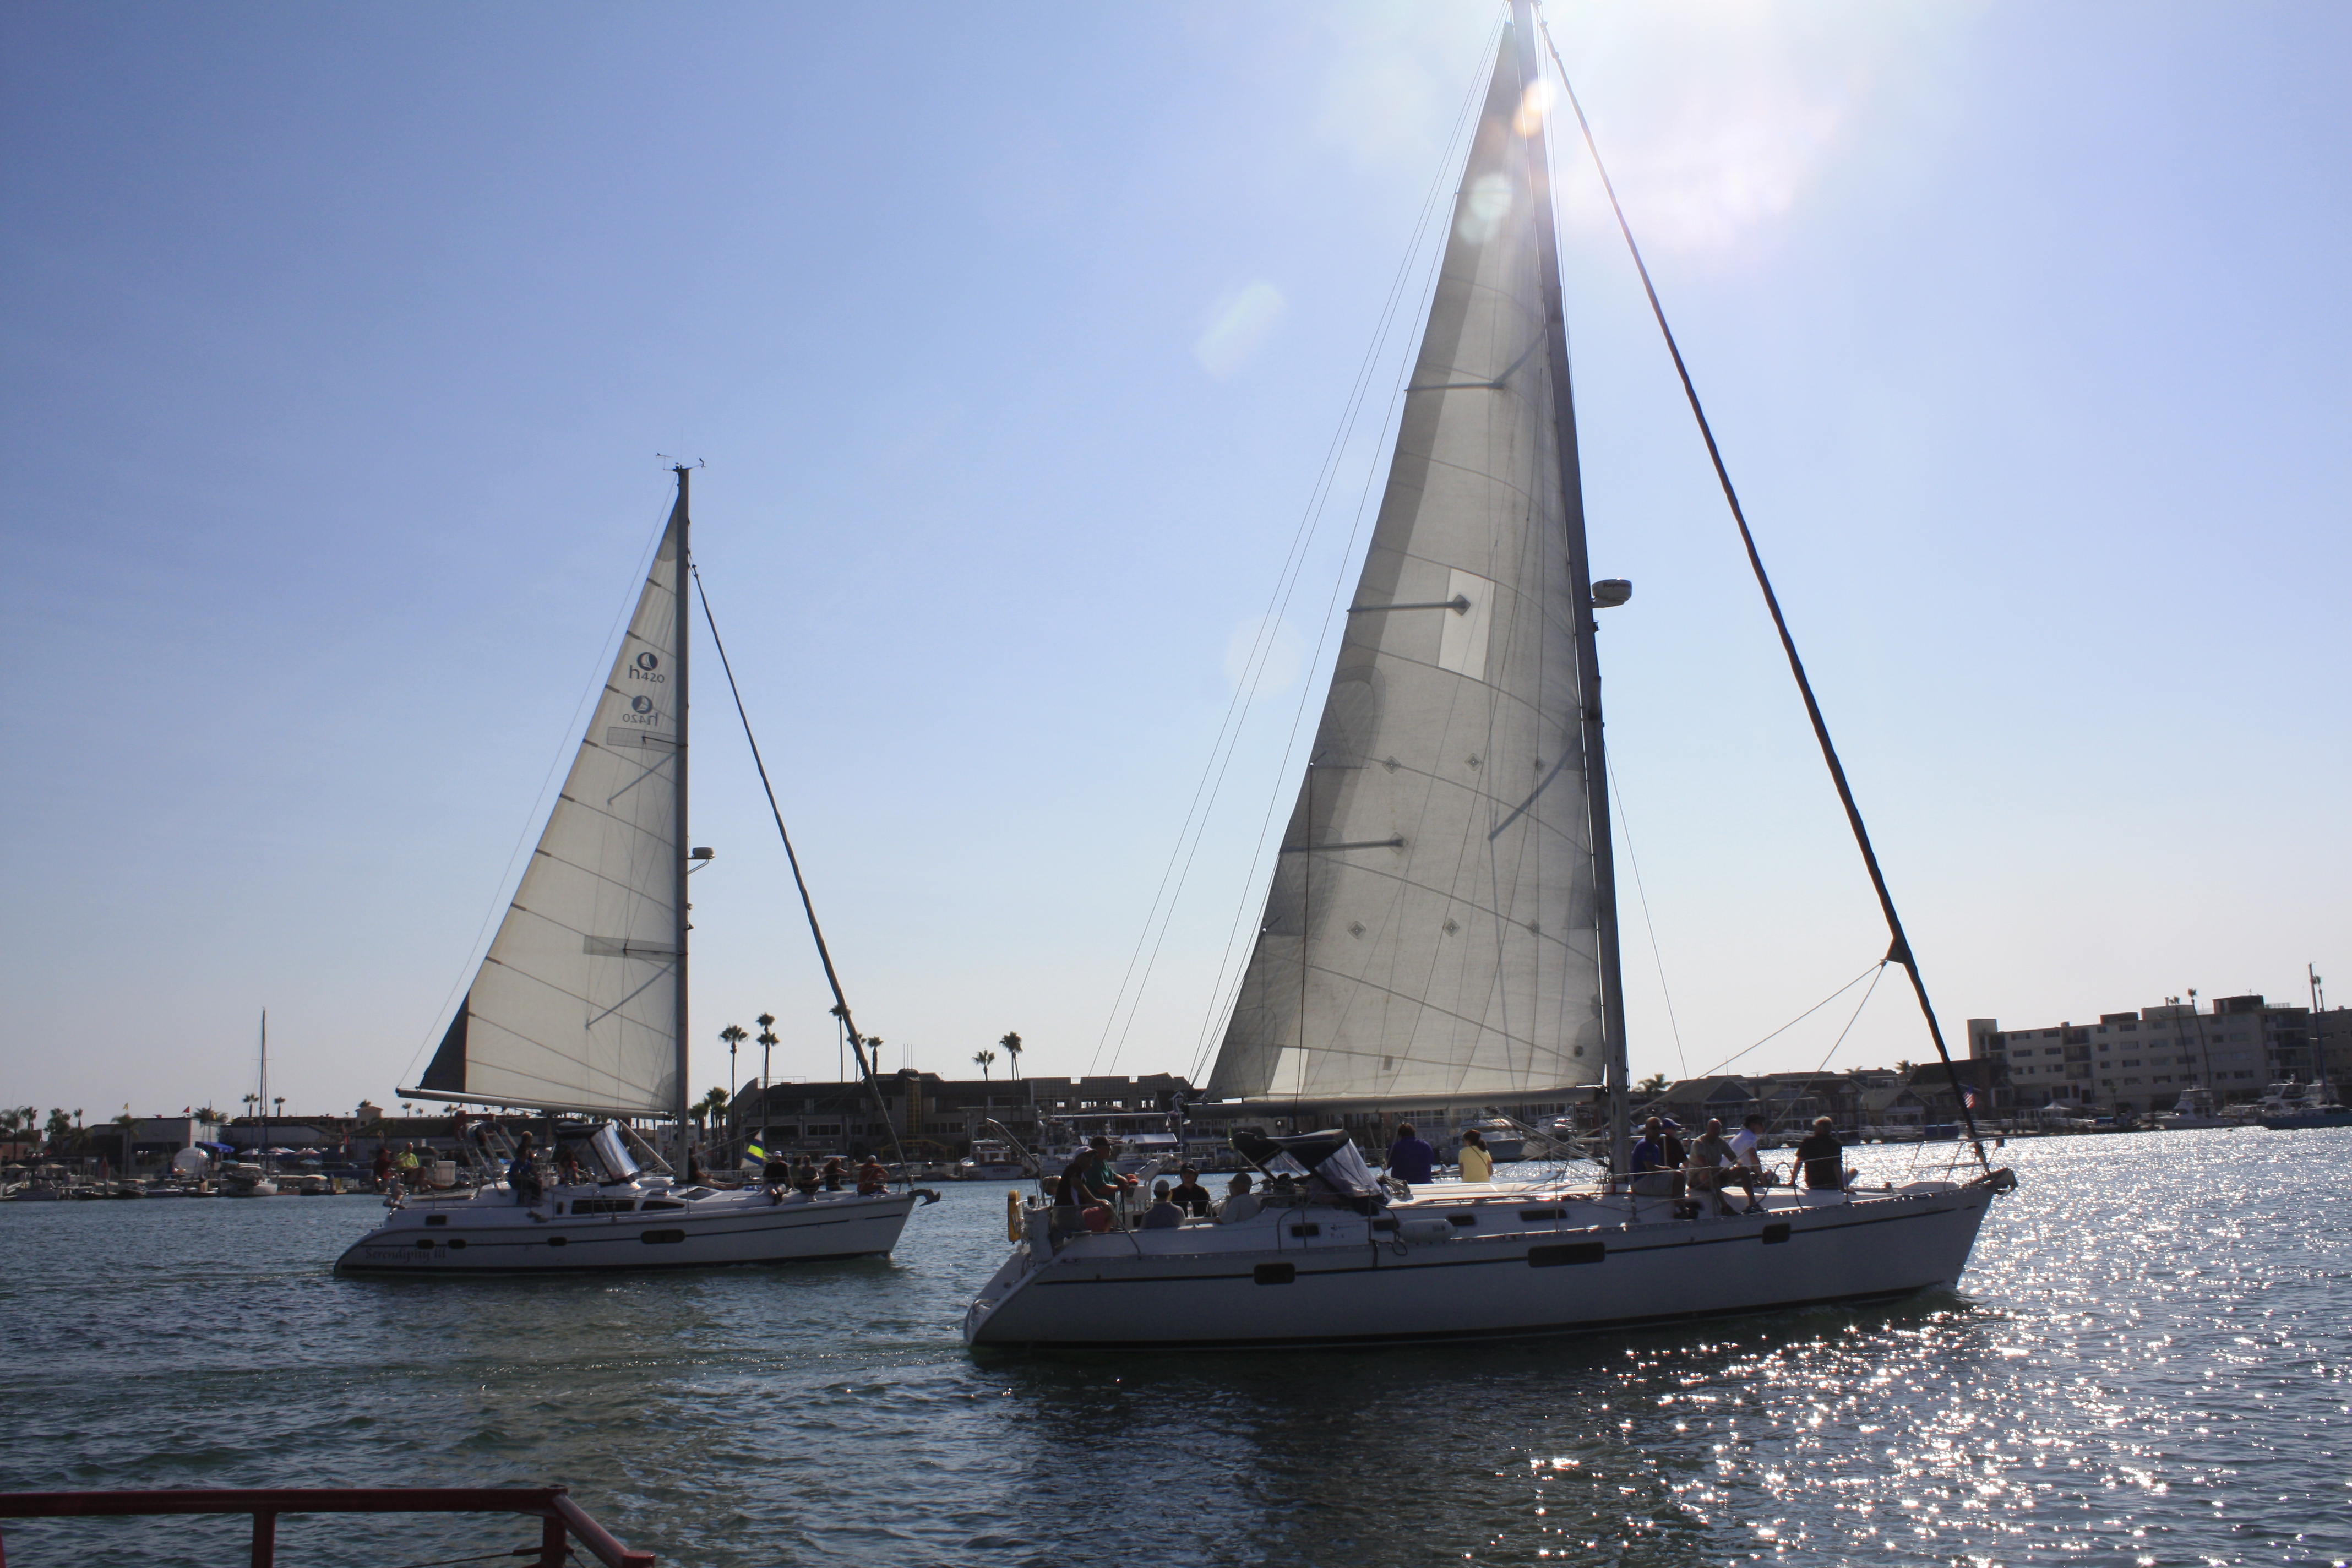 Sailboats in Newport Harbor